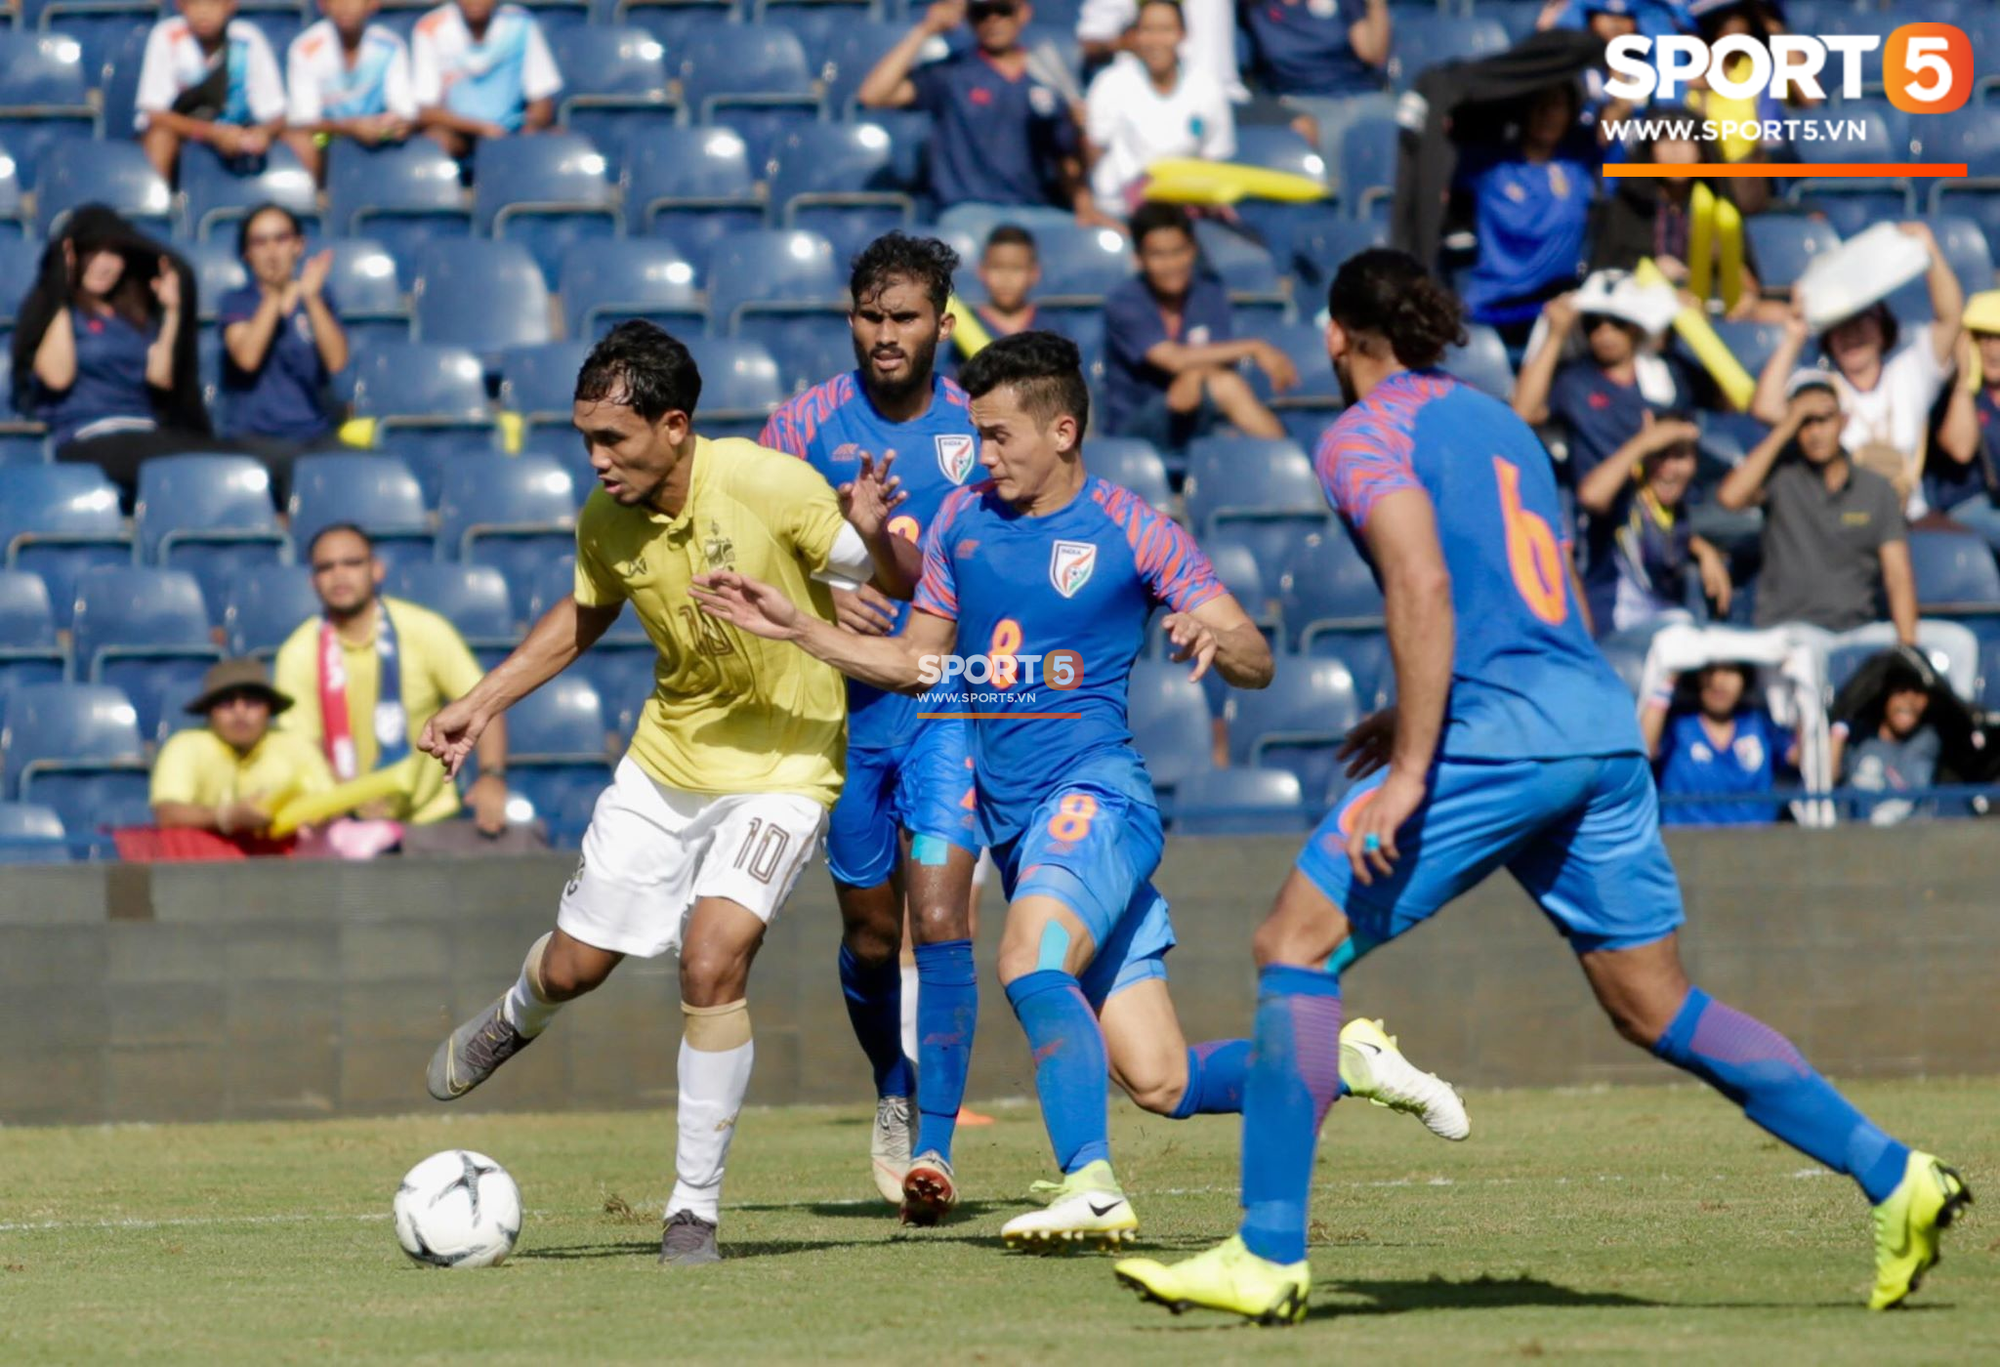 Thua trắng Ấn Độ, Thái Lan xếp chót giải đấu Kings Cup được tổ chức ngay trên sân nhà - Ảnh 1.